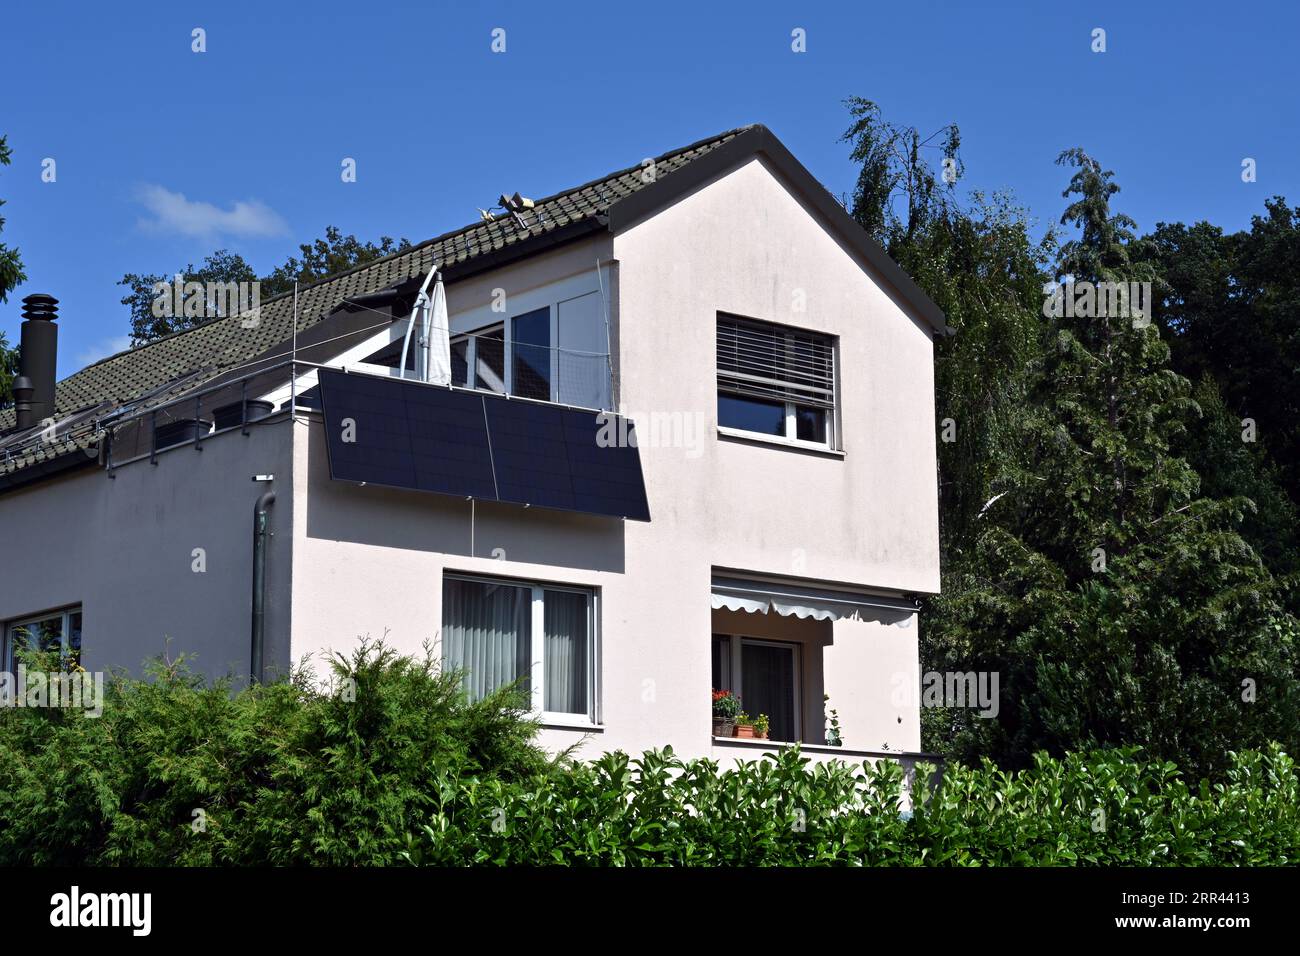 Panneaux solaires ou plaques photovoltaïques installés sur le balcon d'une maison familiale observée dans un village suisse. Banque D'Images